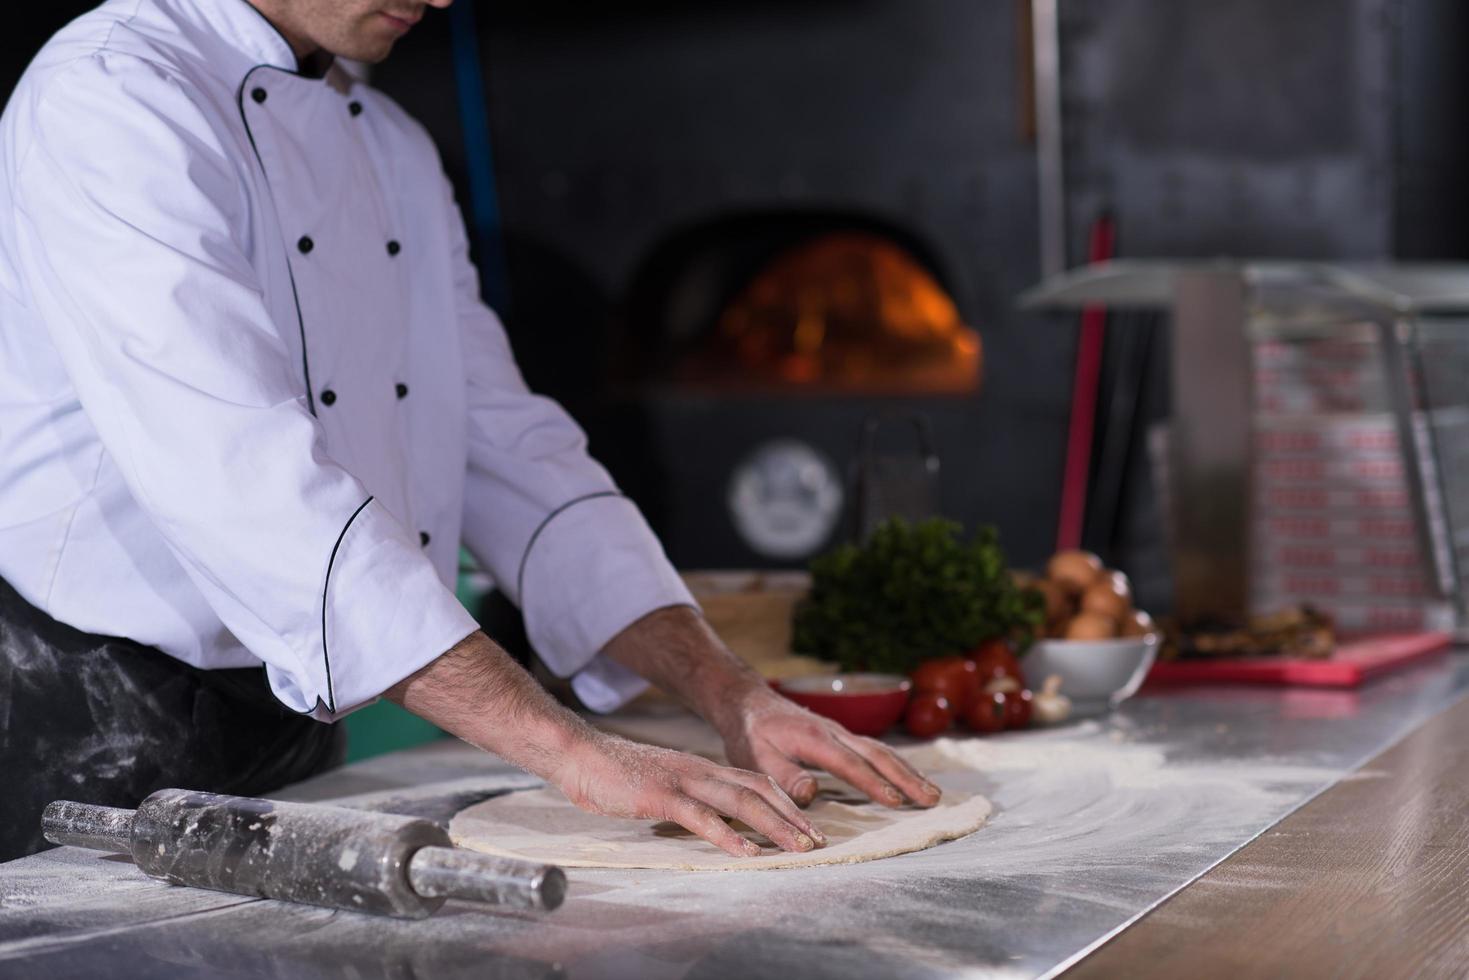 chef preparing dough for pizza photo